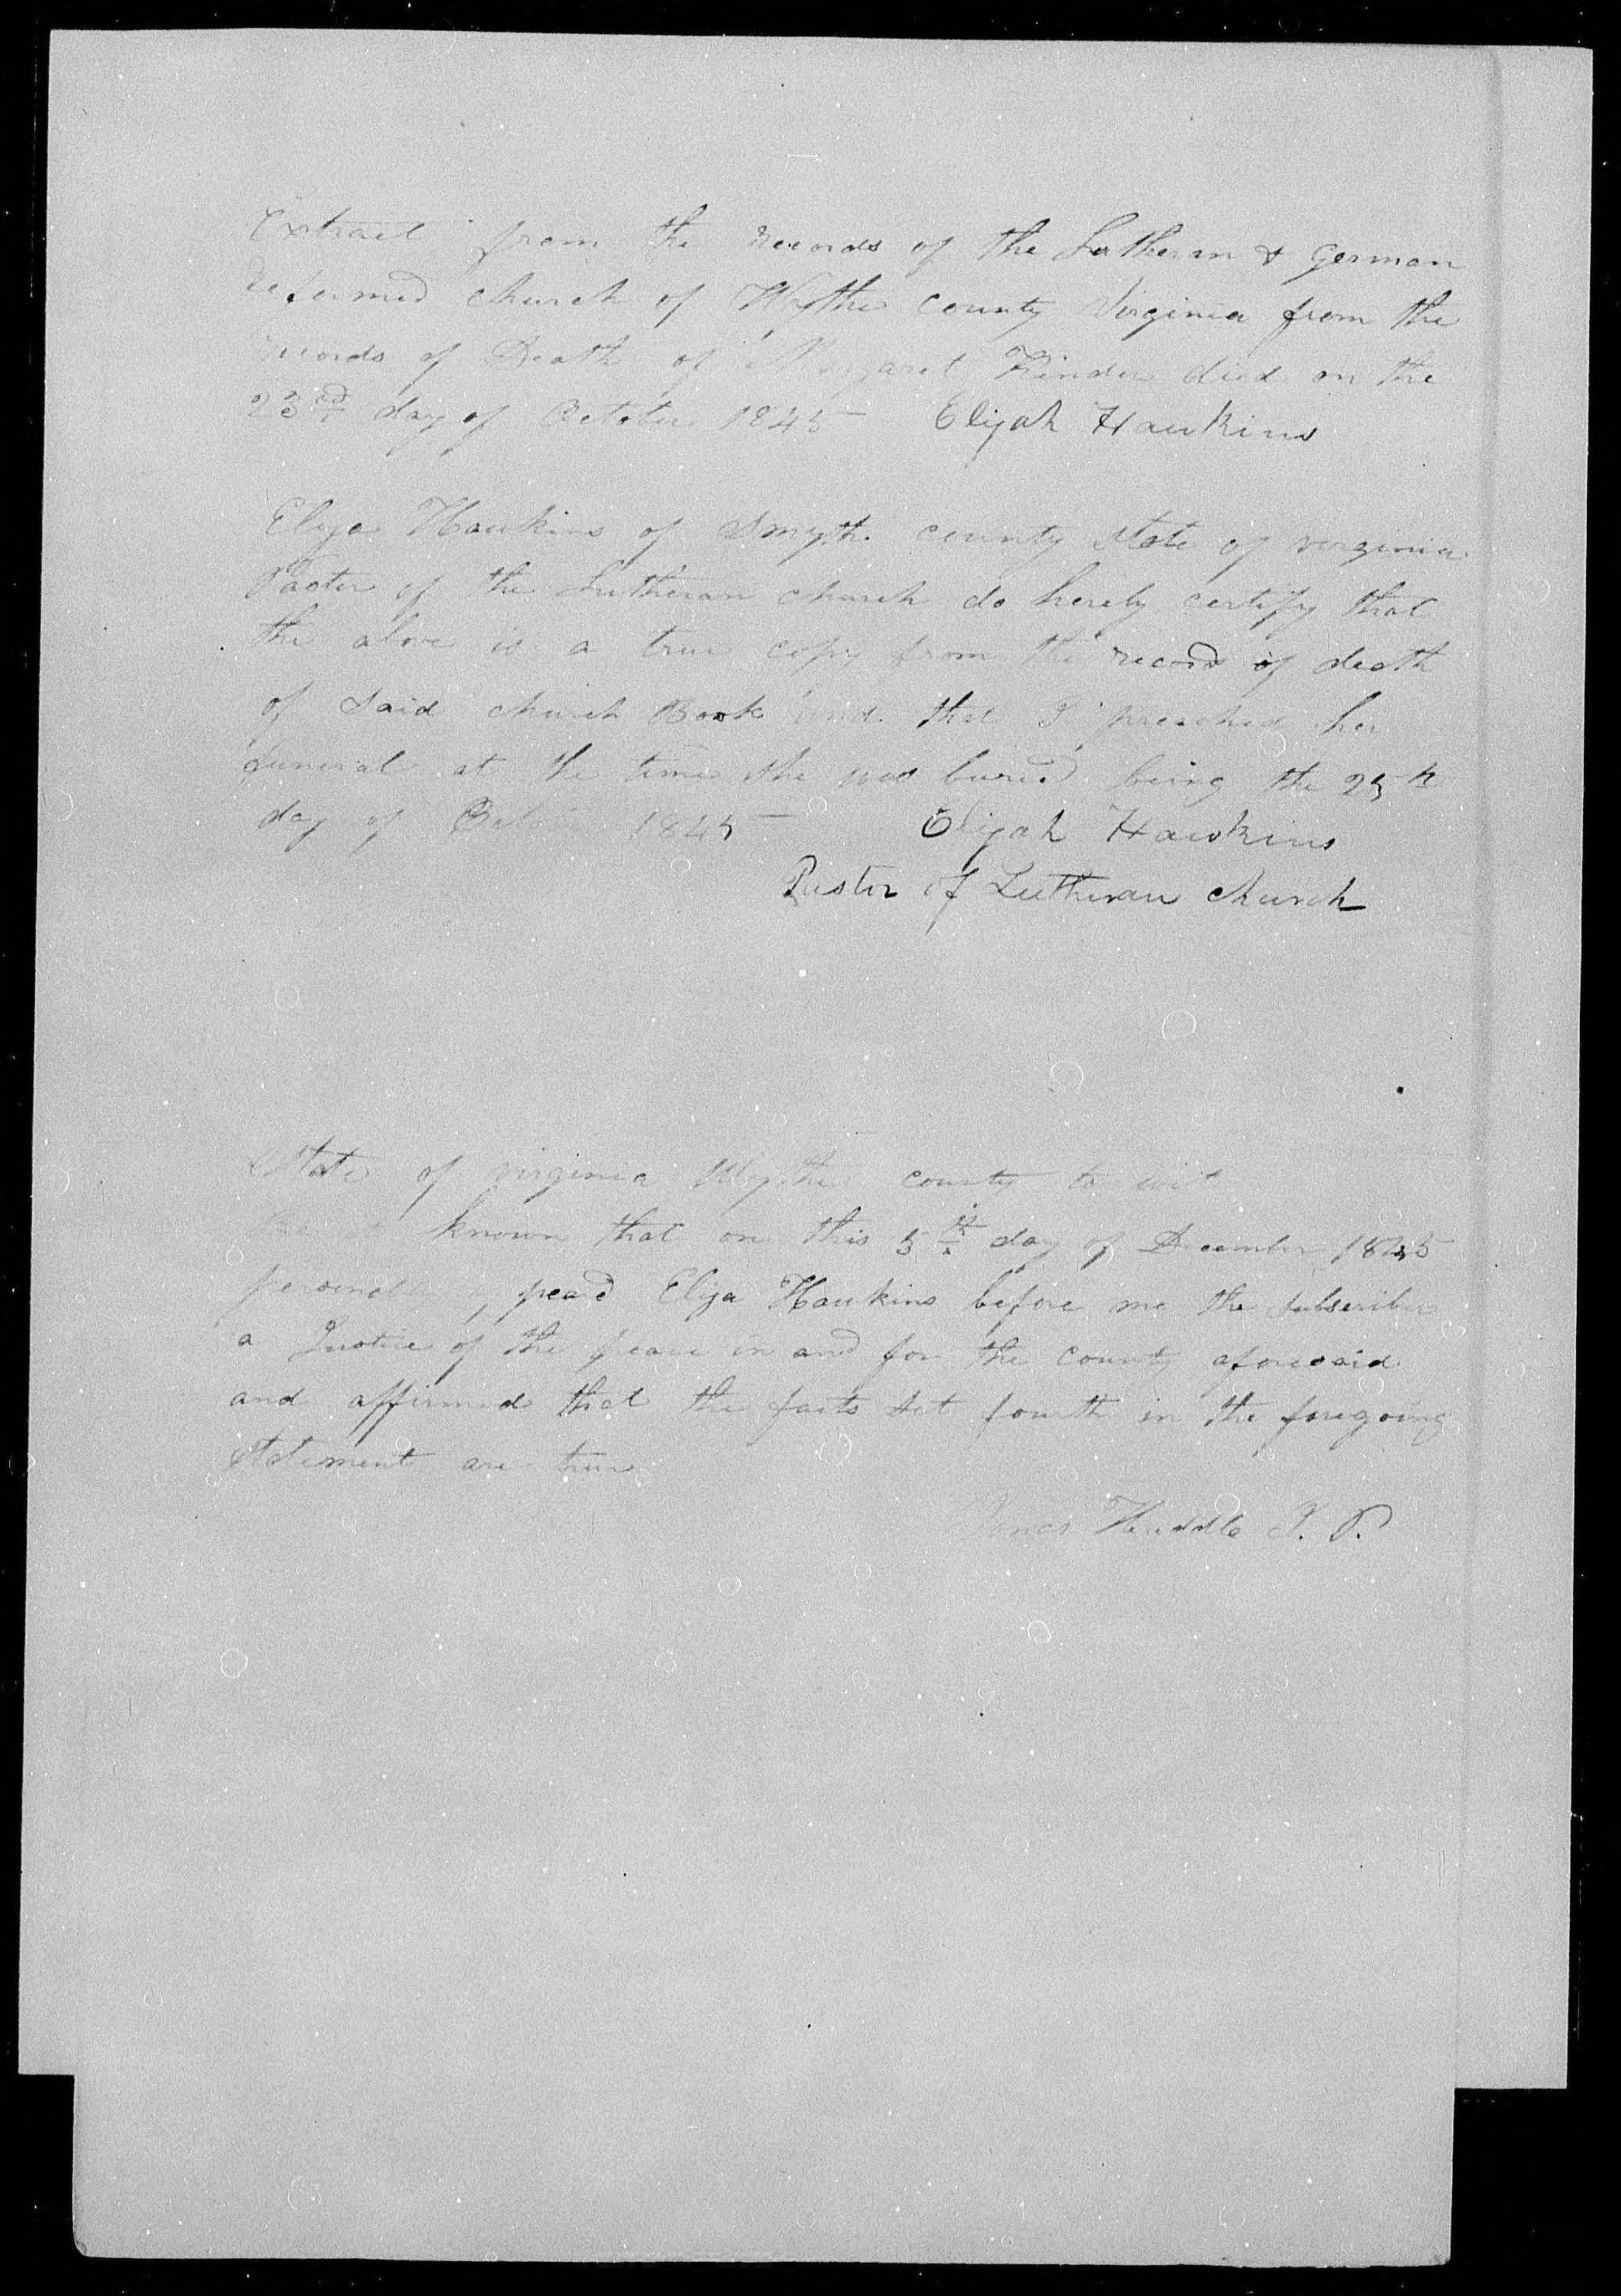 Affidavit of Elijah Hawkins about Margaret Kinder's death, 3 December 1845, page 1